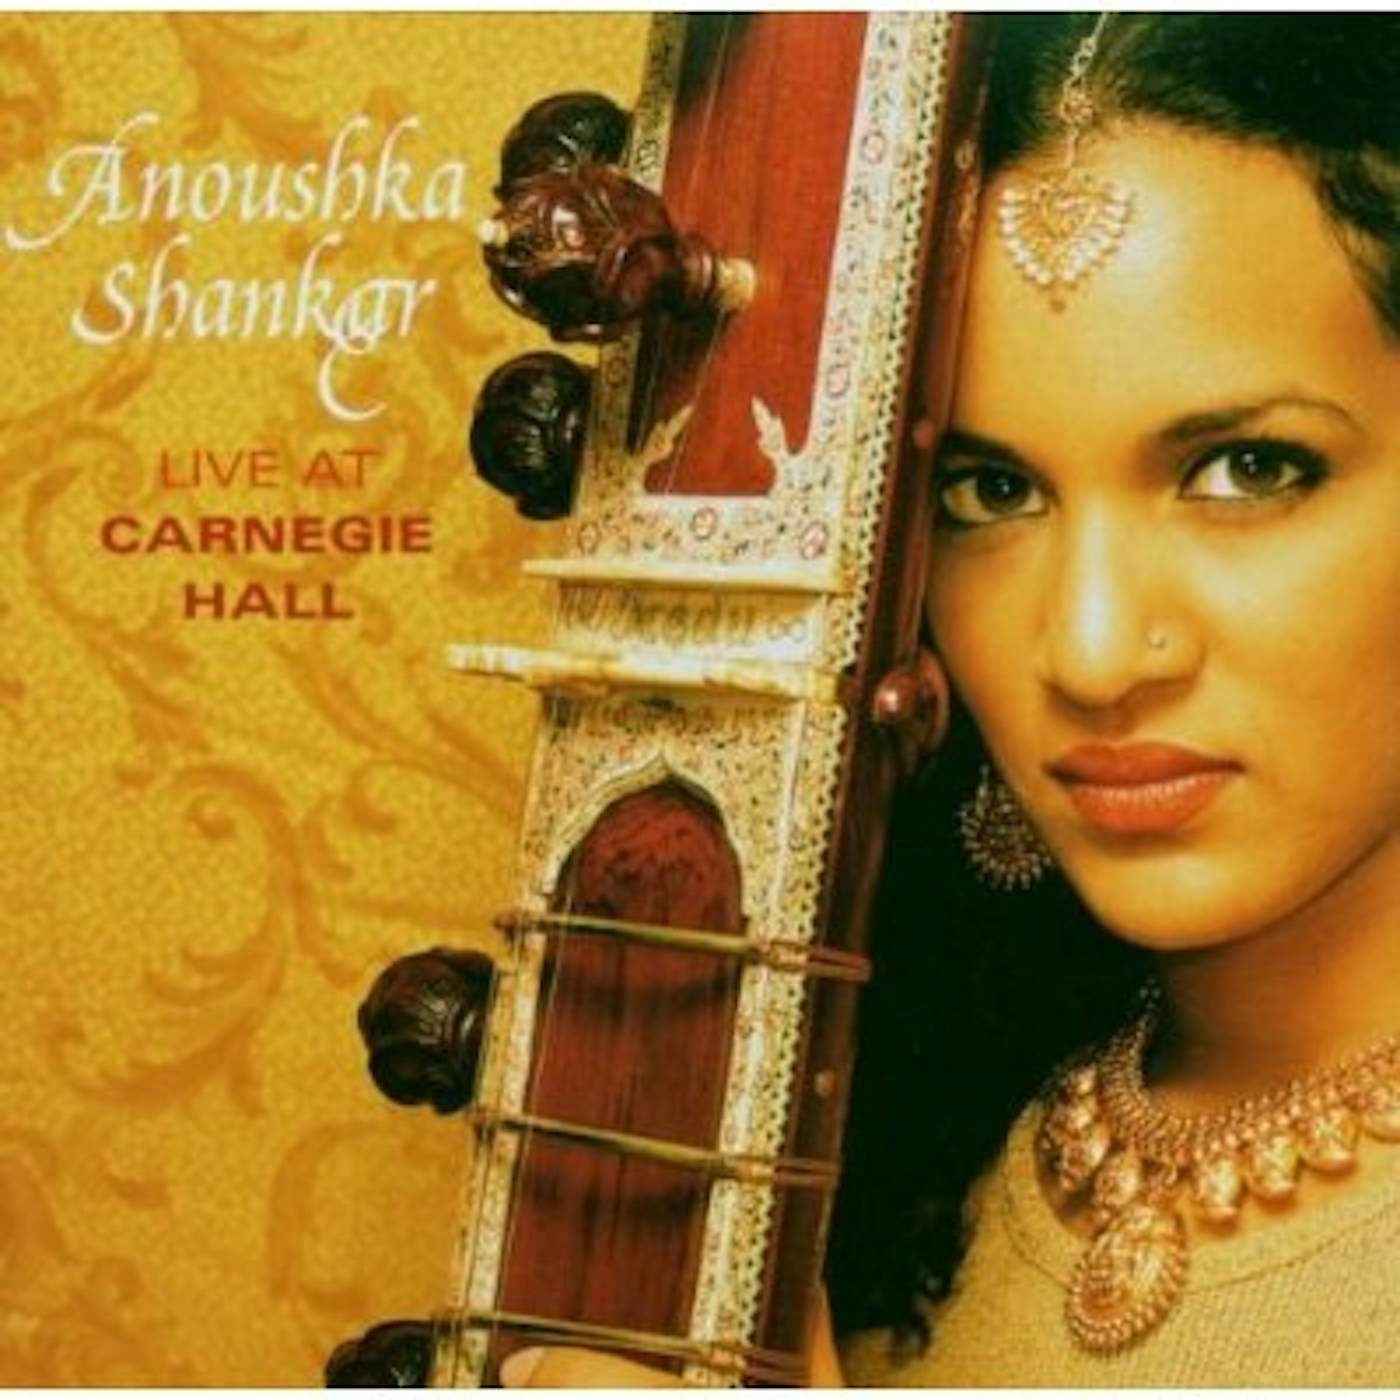 Anoushka Shankar LIVE AT CARNEGIE HALL CD